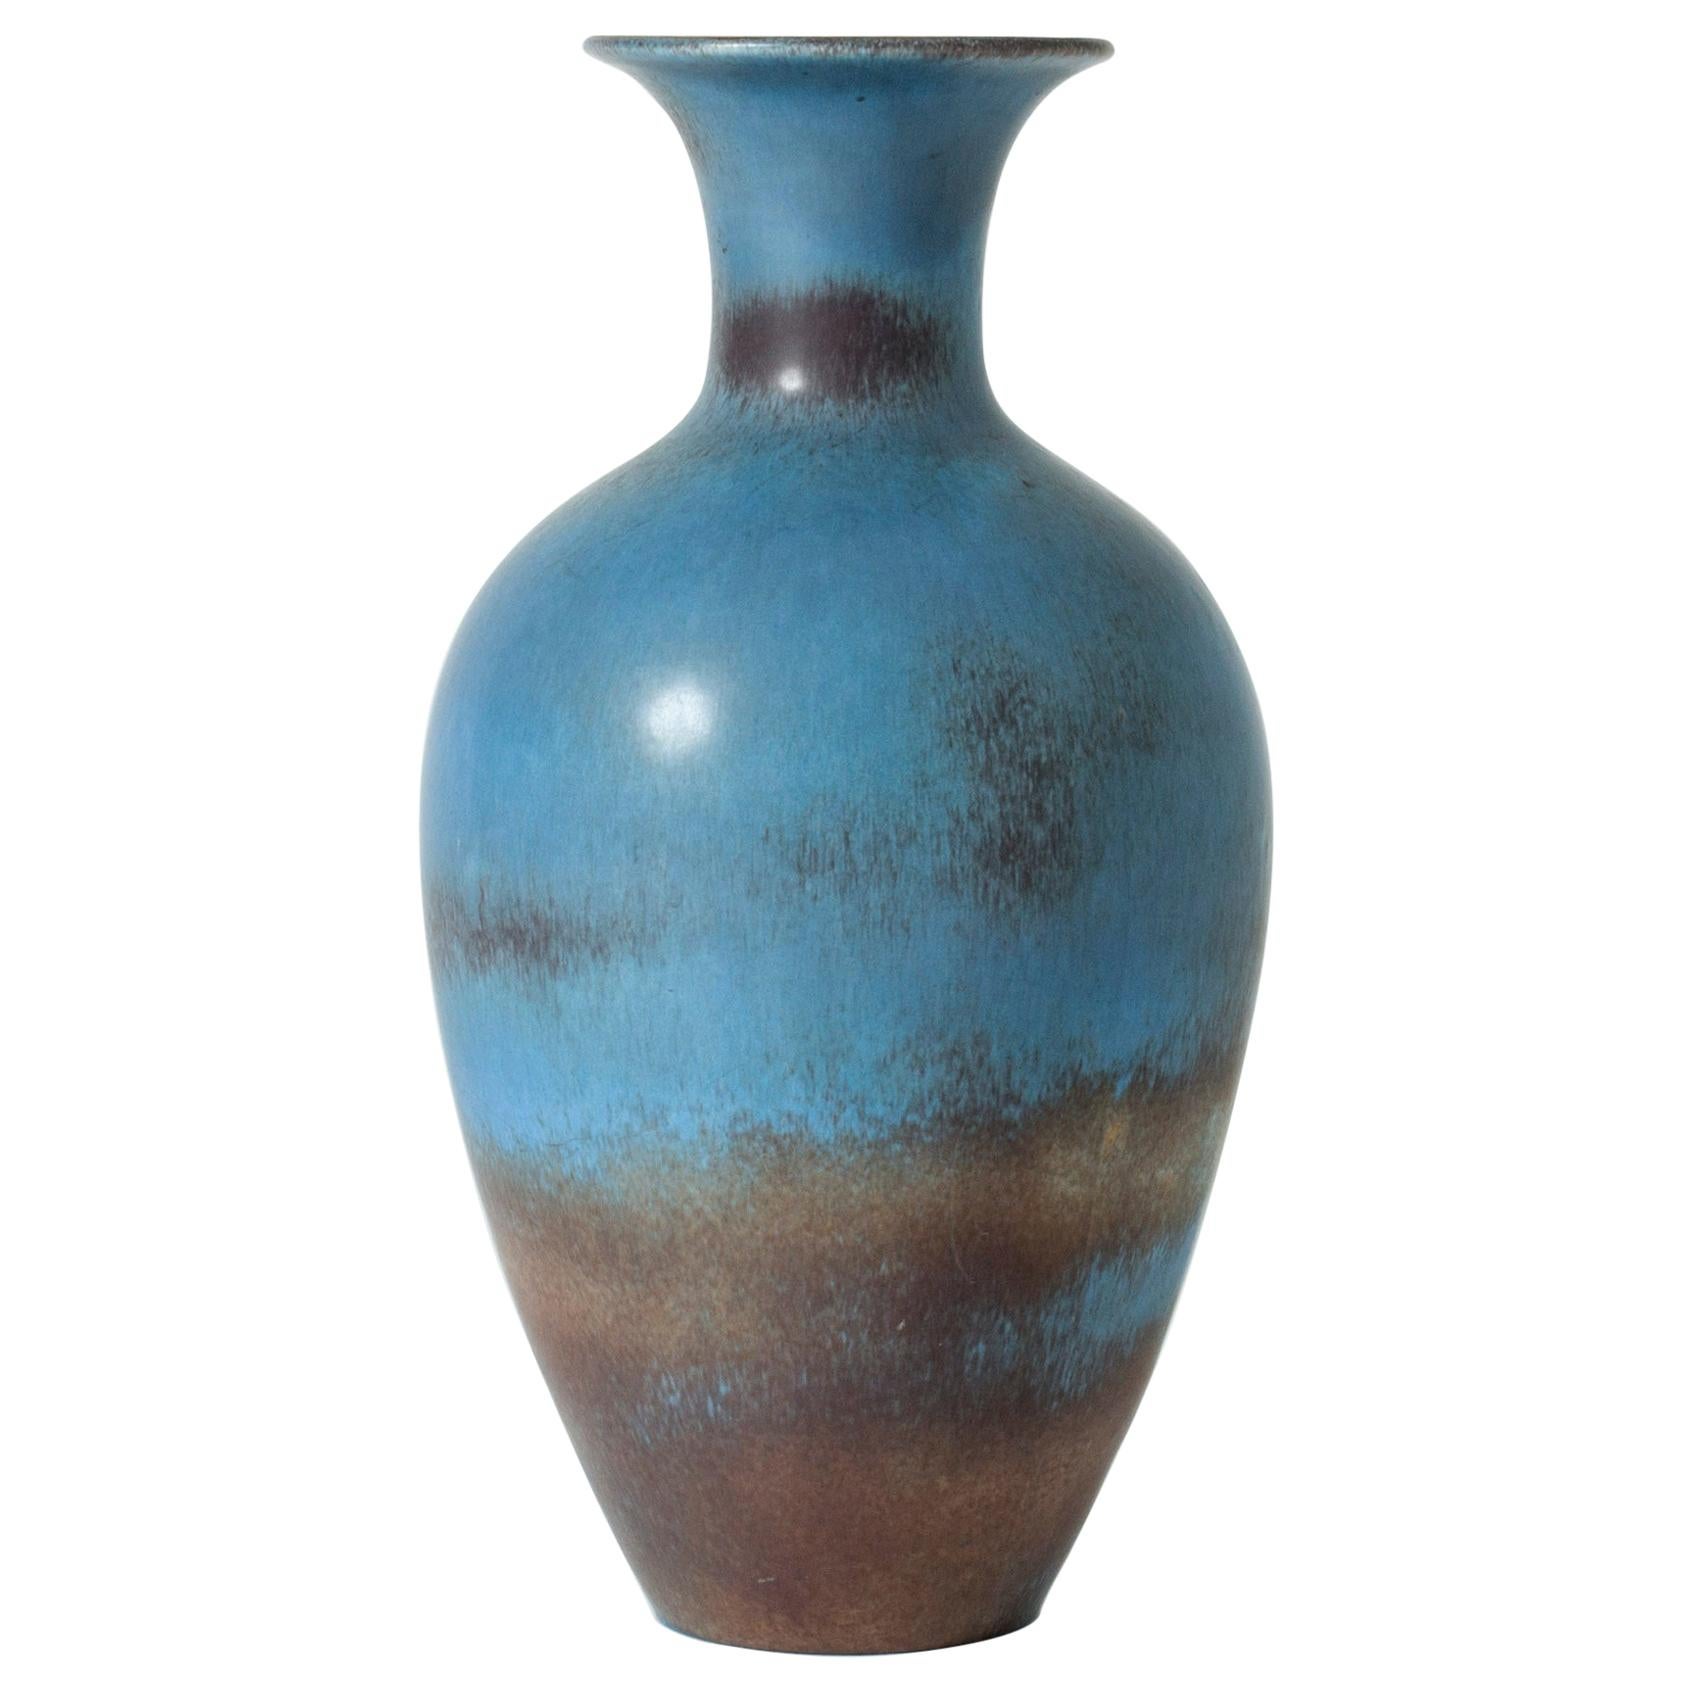 Midcentury Stoneware Vase by Gunnar Nylund for Rörstrand, Sweden, 1950s